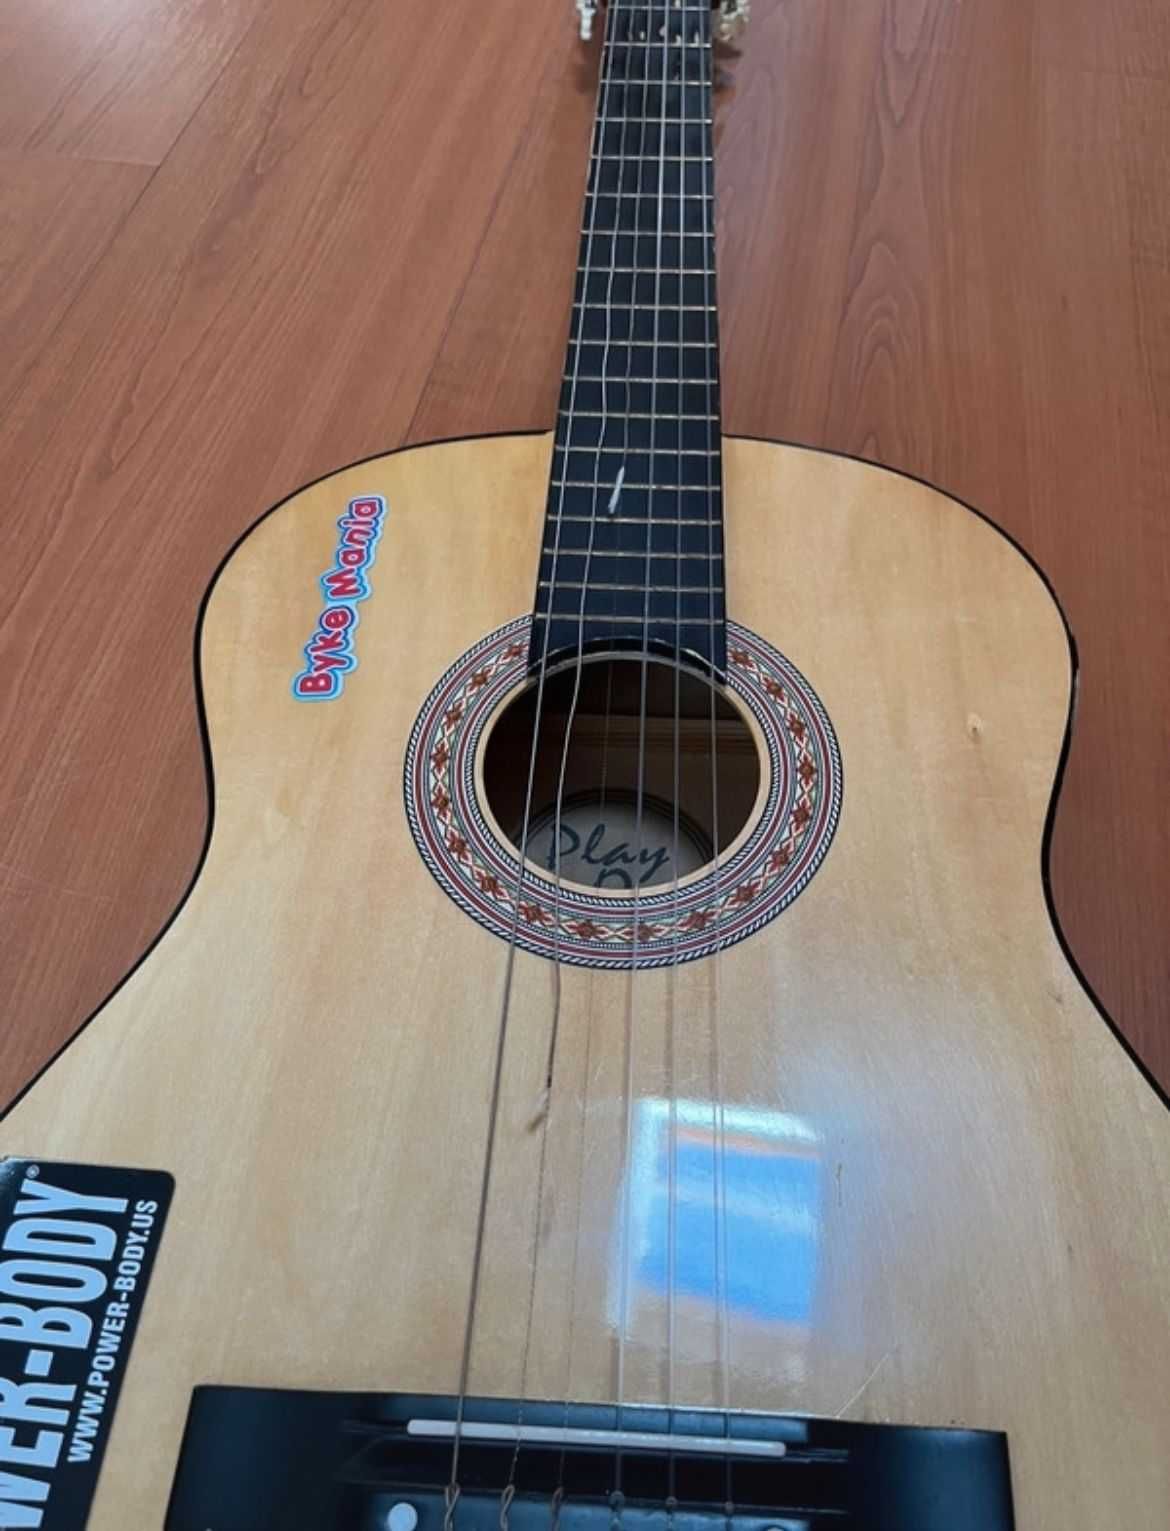 Guitarra da "Play On" com suporte tripé e capa protetora